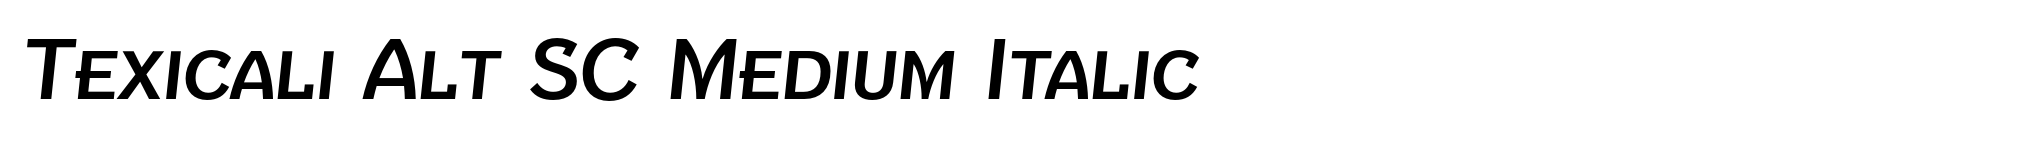 Texicali Alt SC Medium Italic image